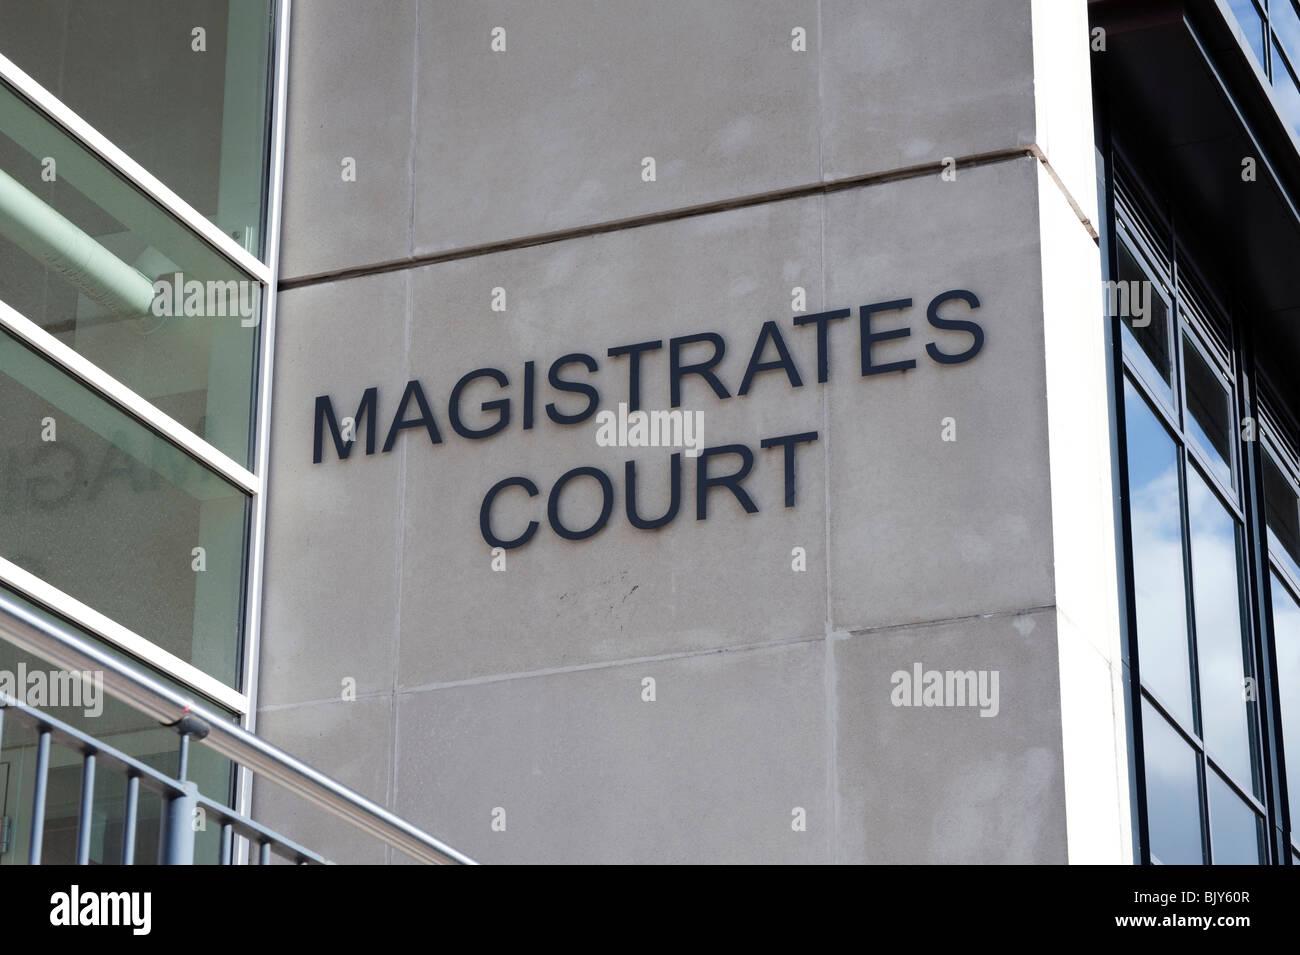 Hereford magistrates court, Royaume-Uni. Palais de justice dans le centre-ville de Hereford. Banque D'Images